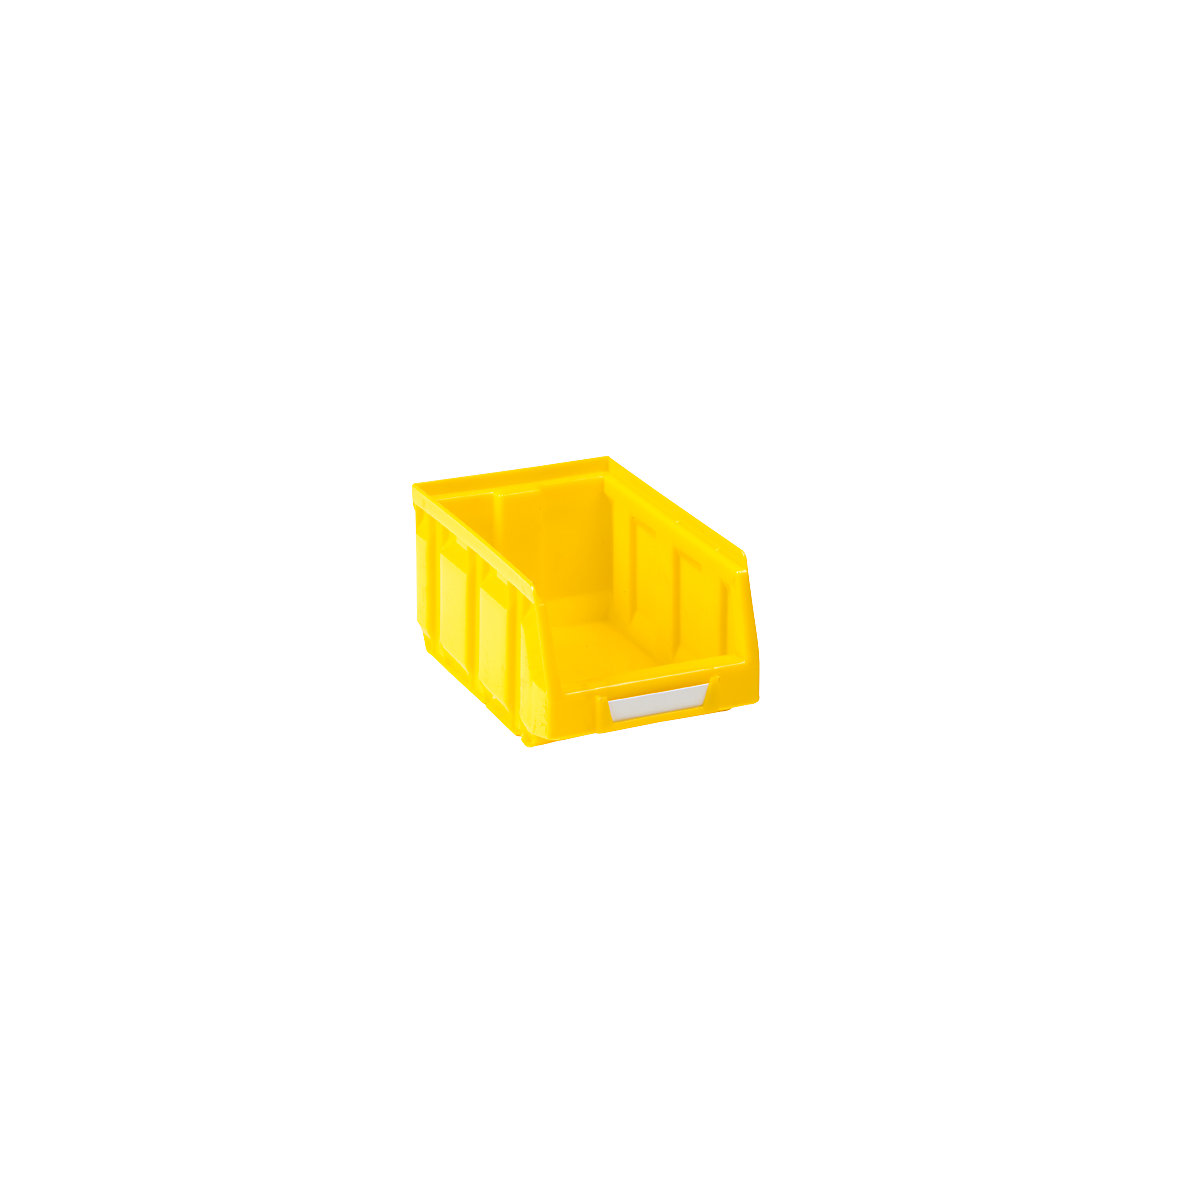 Magazijnbak van polyethyleen, l x b x h = 167 x 105 x 82 mm, geel, VE = 48 stuks-11